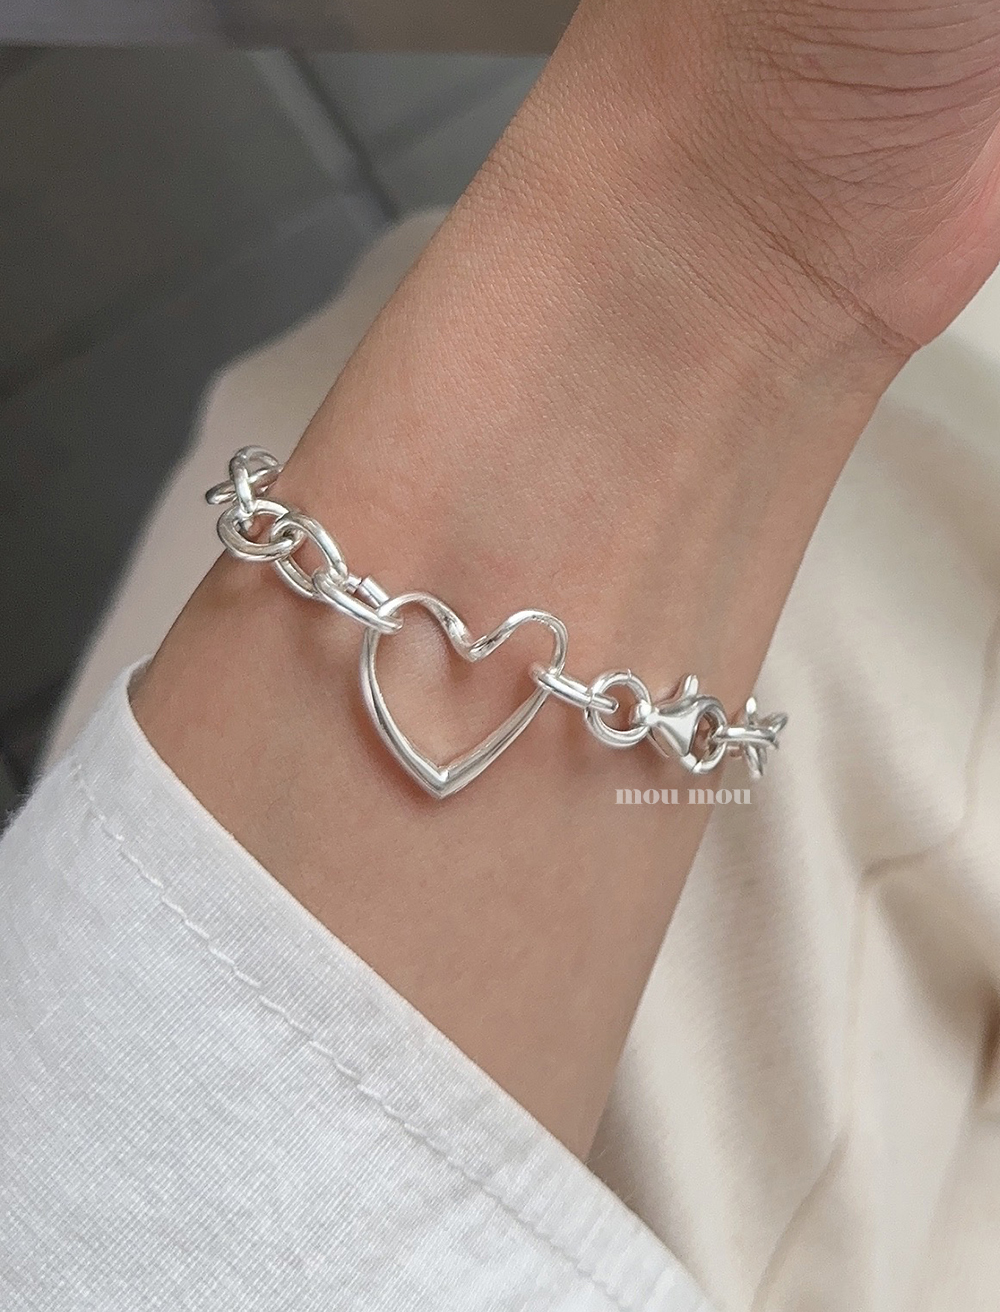 웨이브 하트 체인 팔찌 waved heart chain bracelet